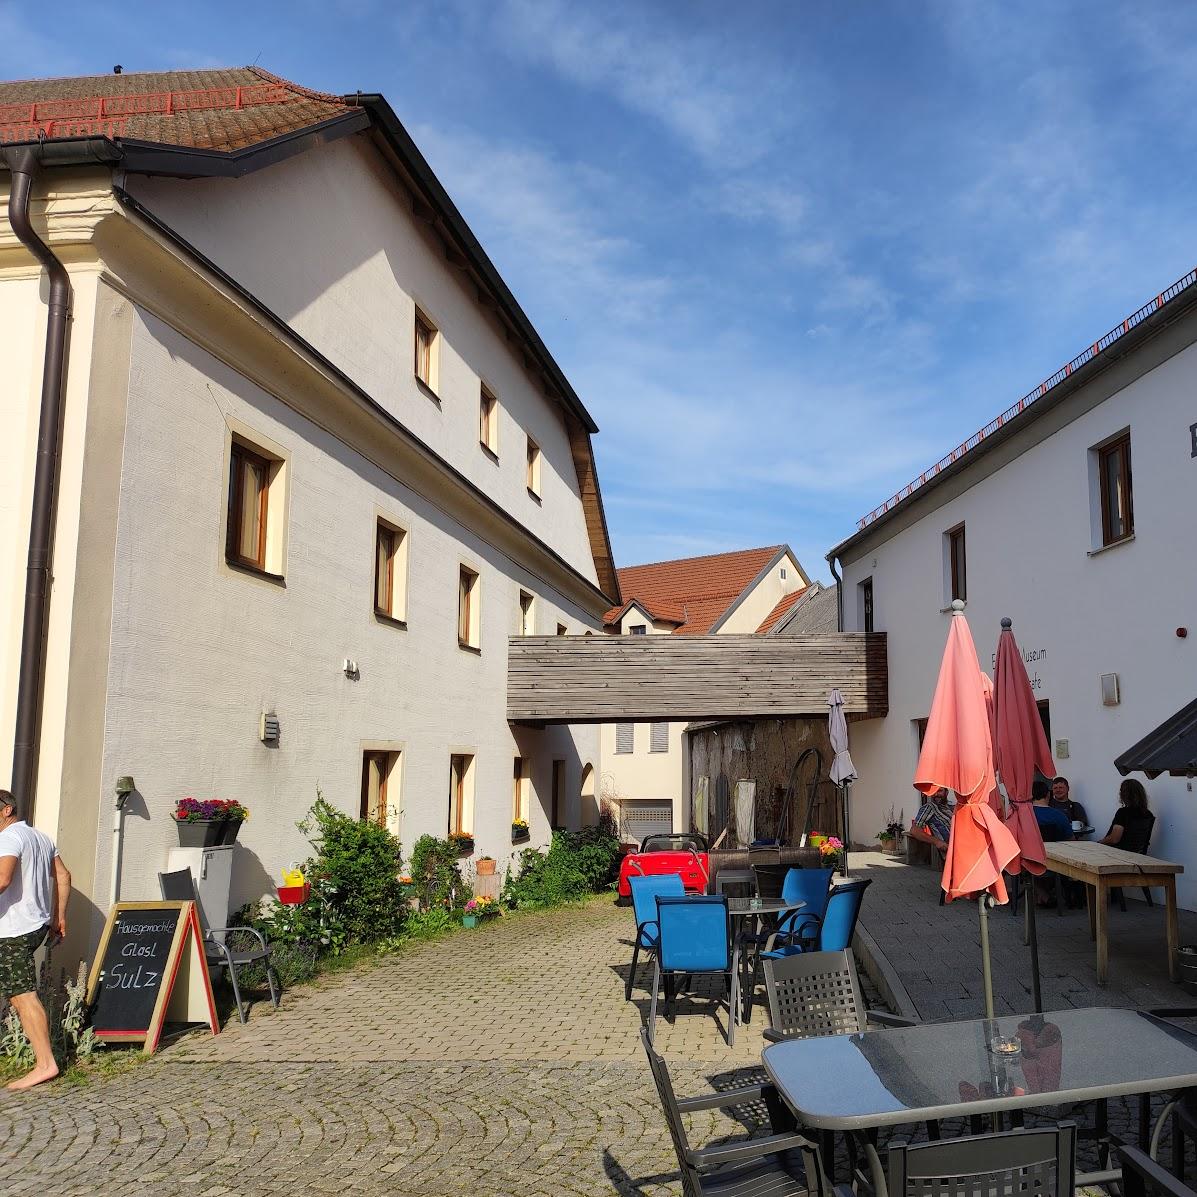 Restaurant "Radlwirtschaft mit Cafe" in Arnschwang